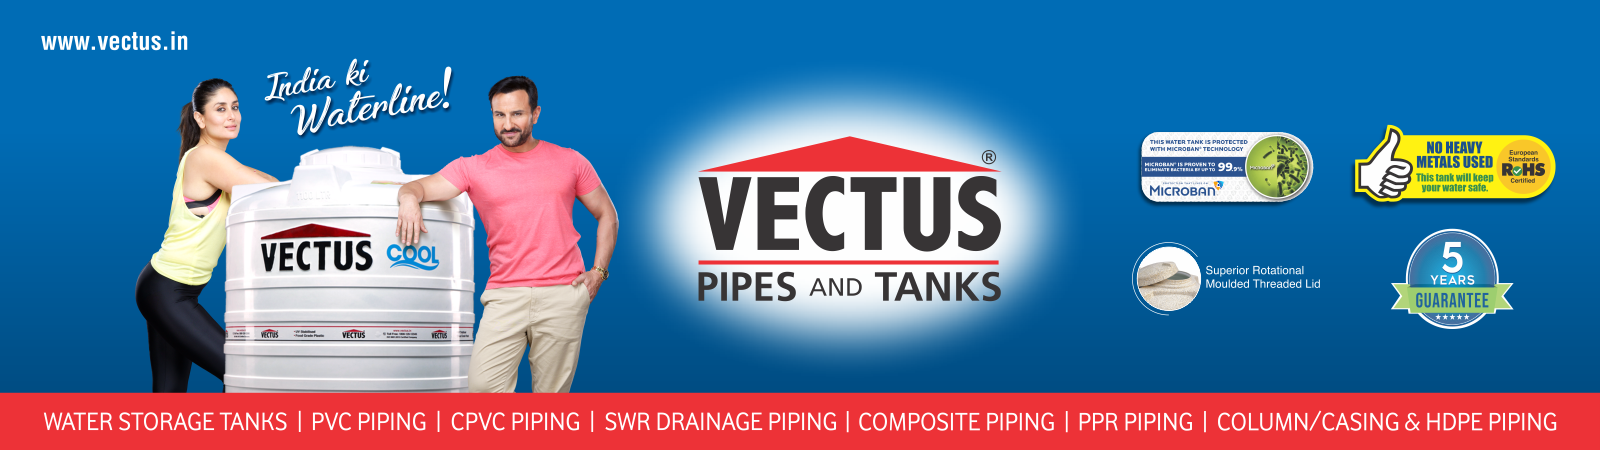 Vectus Water Tanks